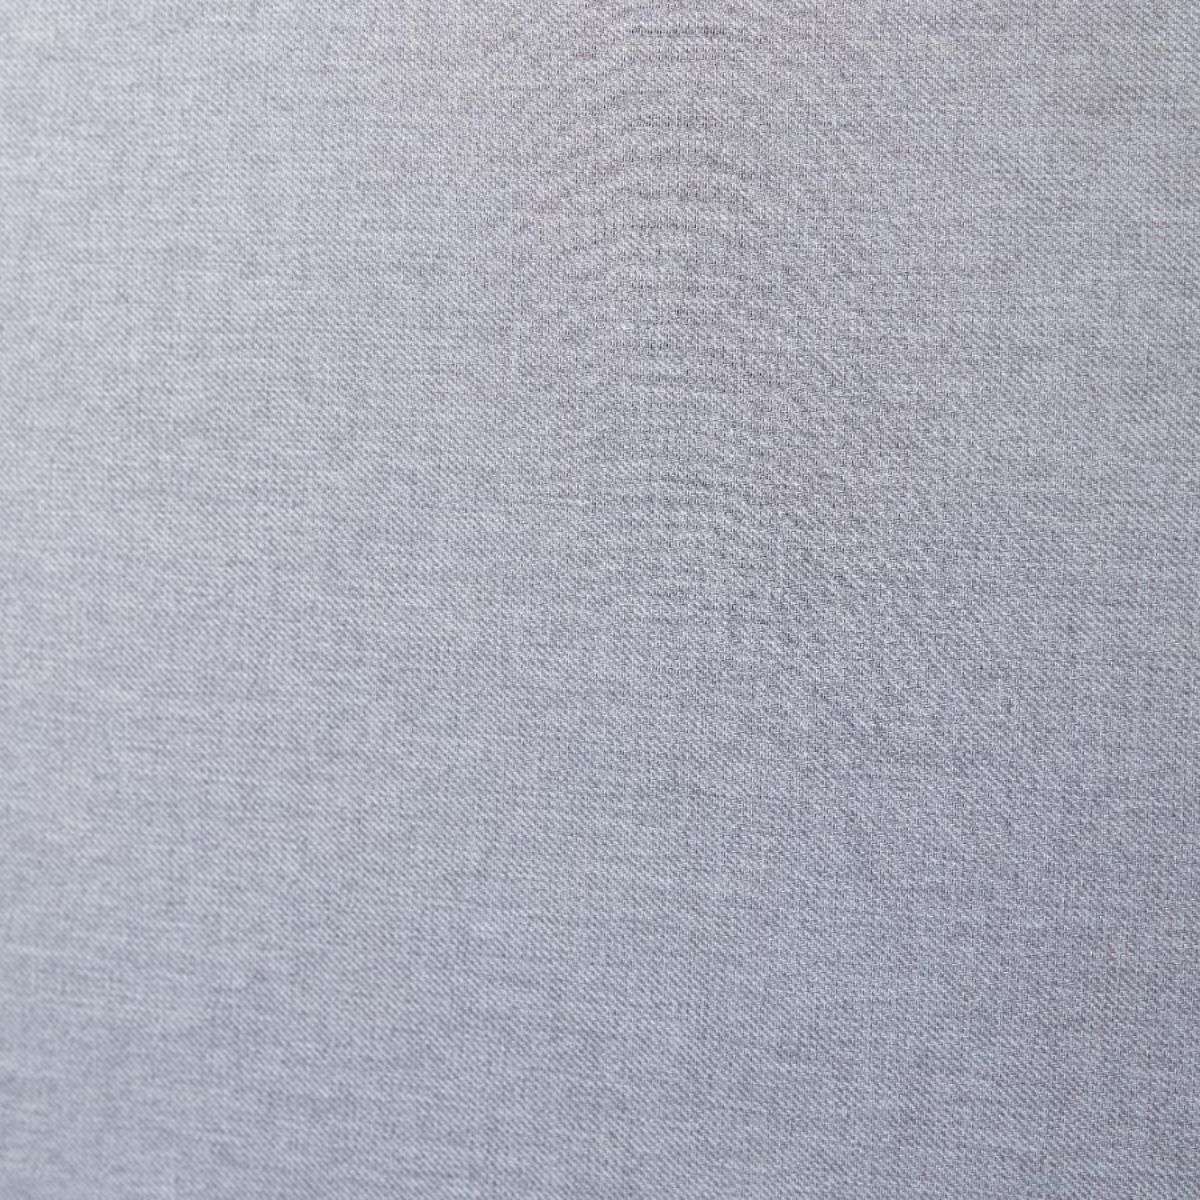 Imogen King Single Bed - Light Grey